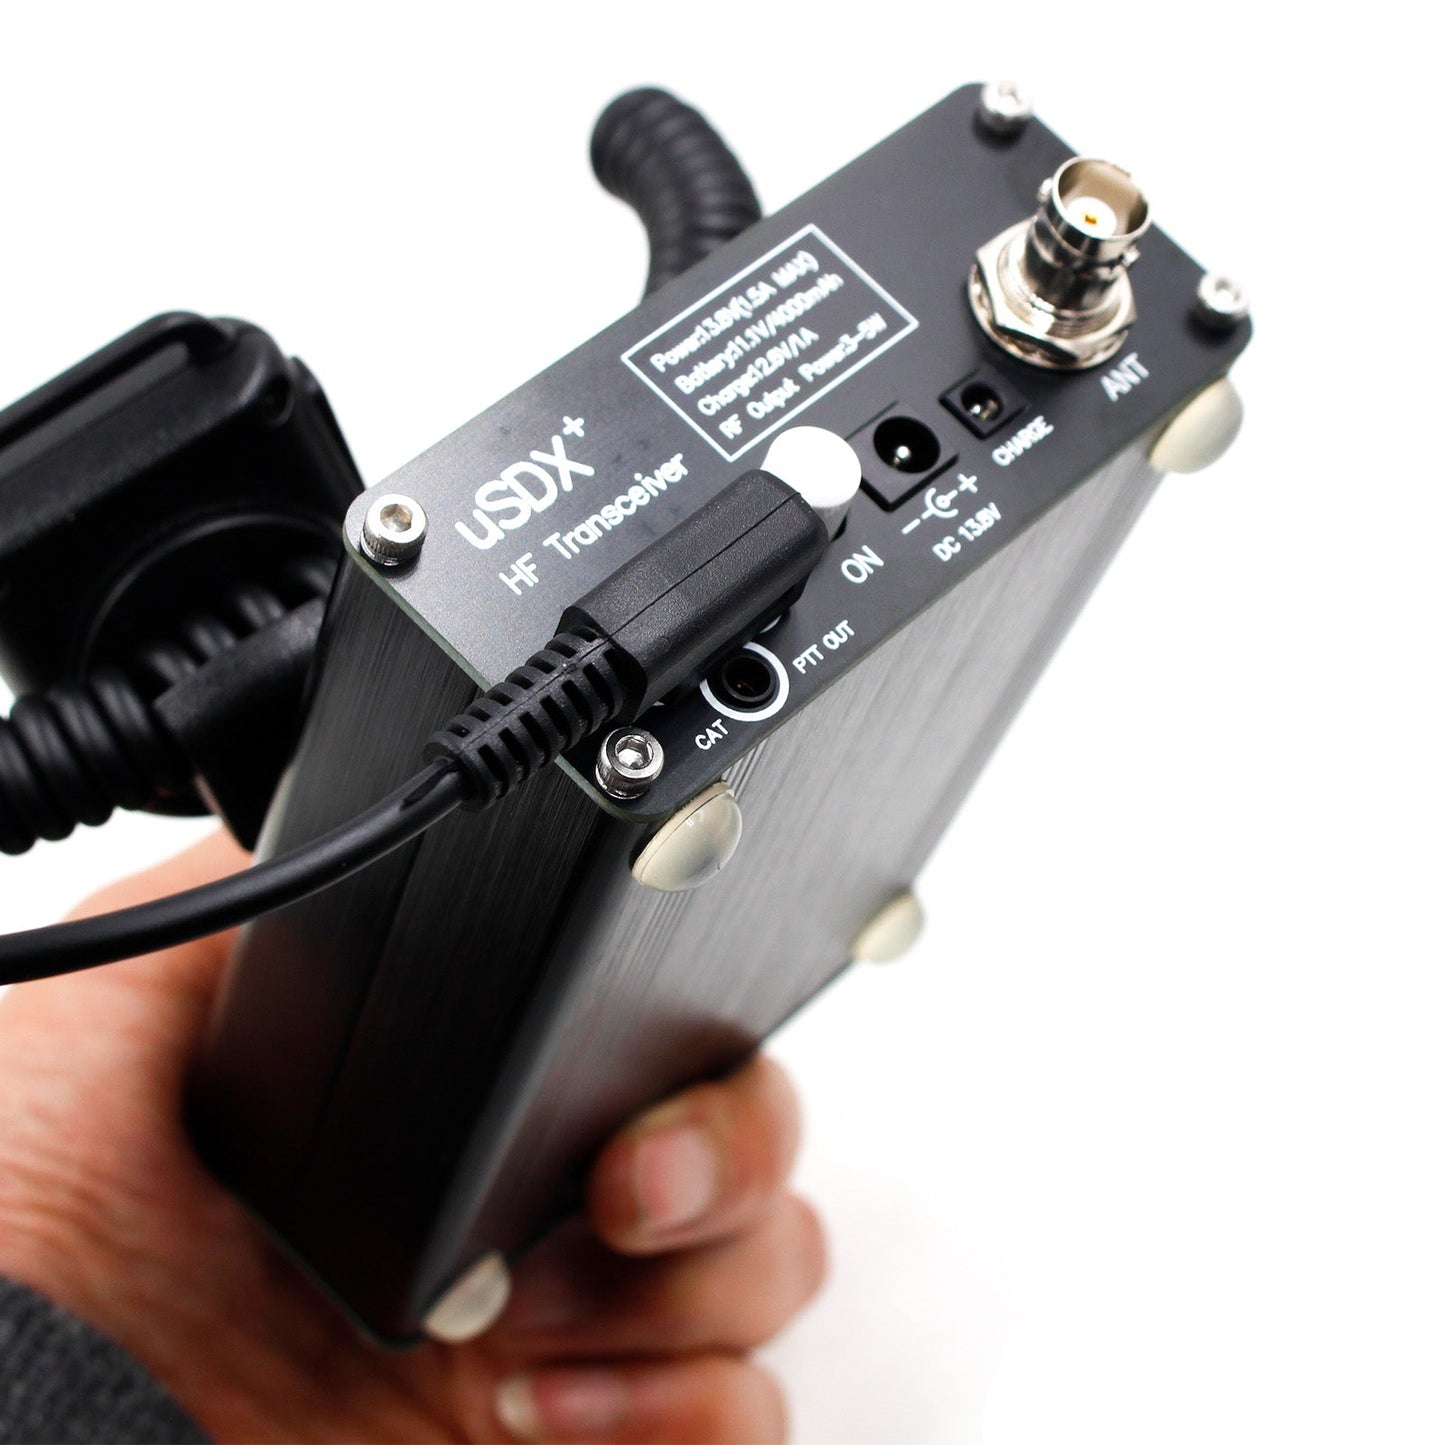 Usdr usdx+ Plus Transceiver All Mode 8 Band HF Ham Radio w/Power Adapter EU Plug